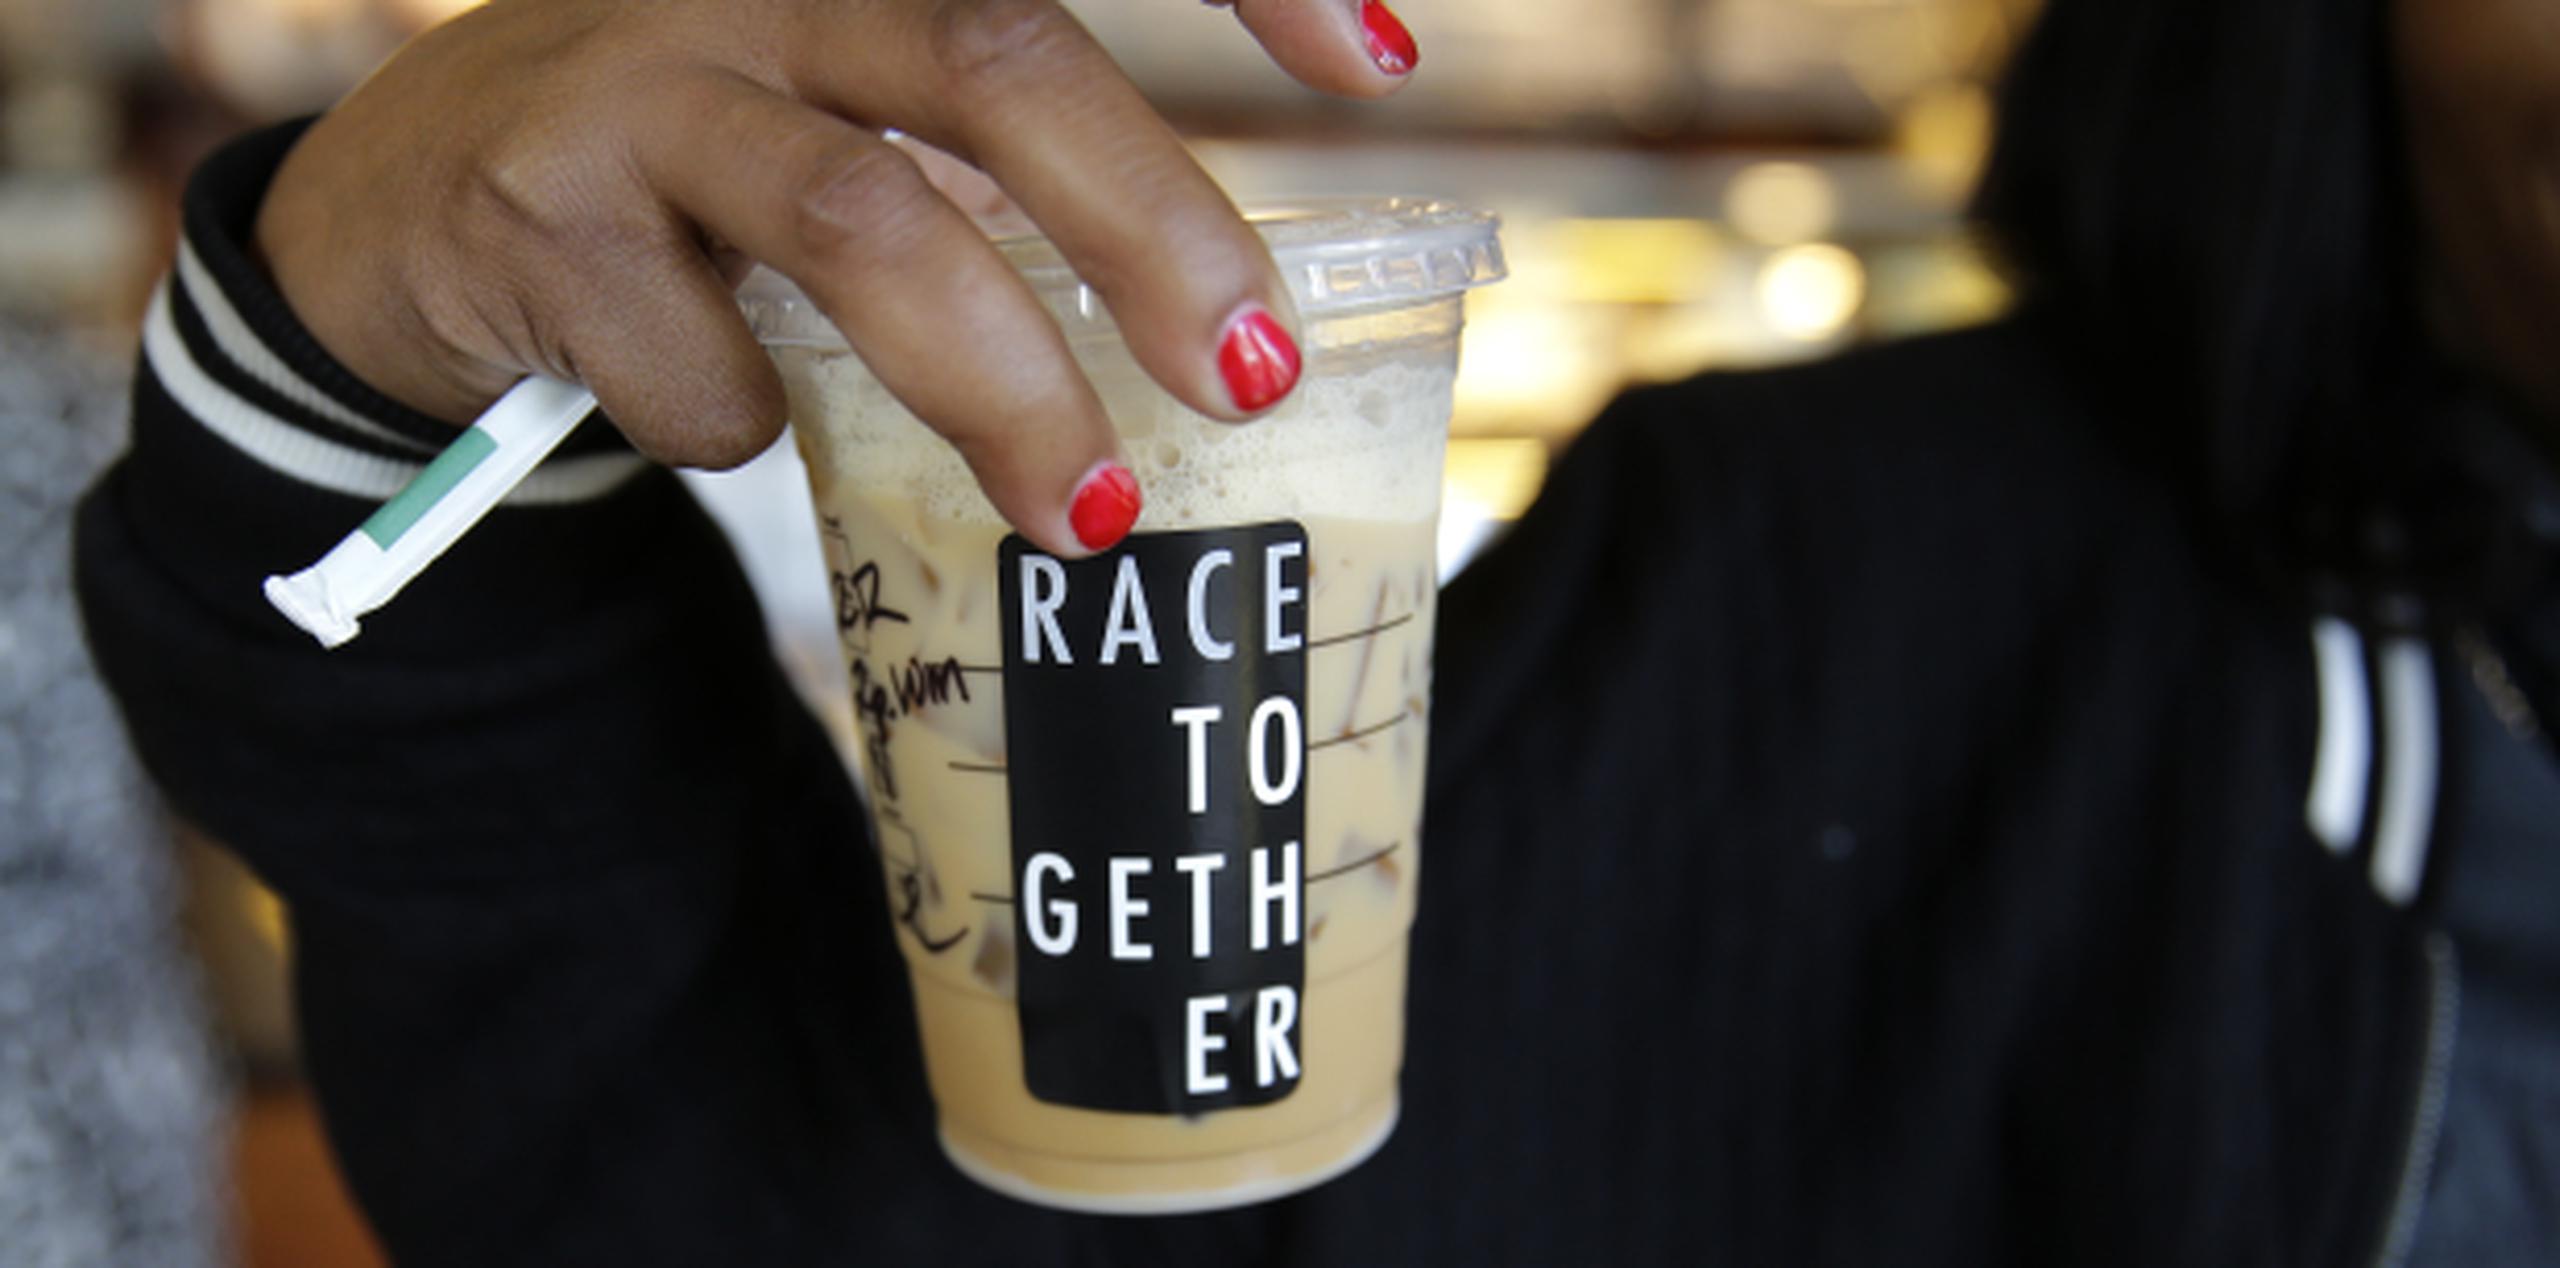 Algunos clientes coincidieron en que Starbucks no es lugar para conversar sobre las razas. (Archivo)